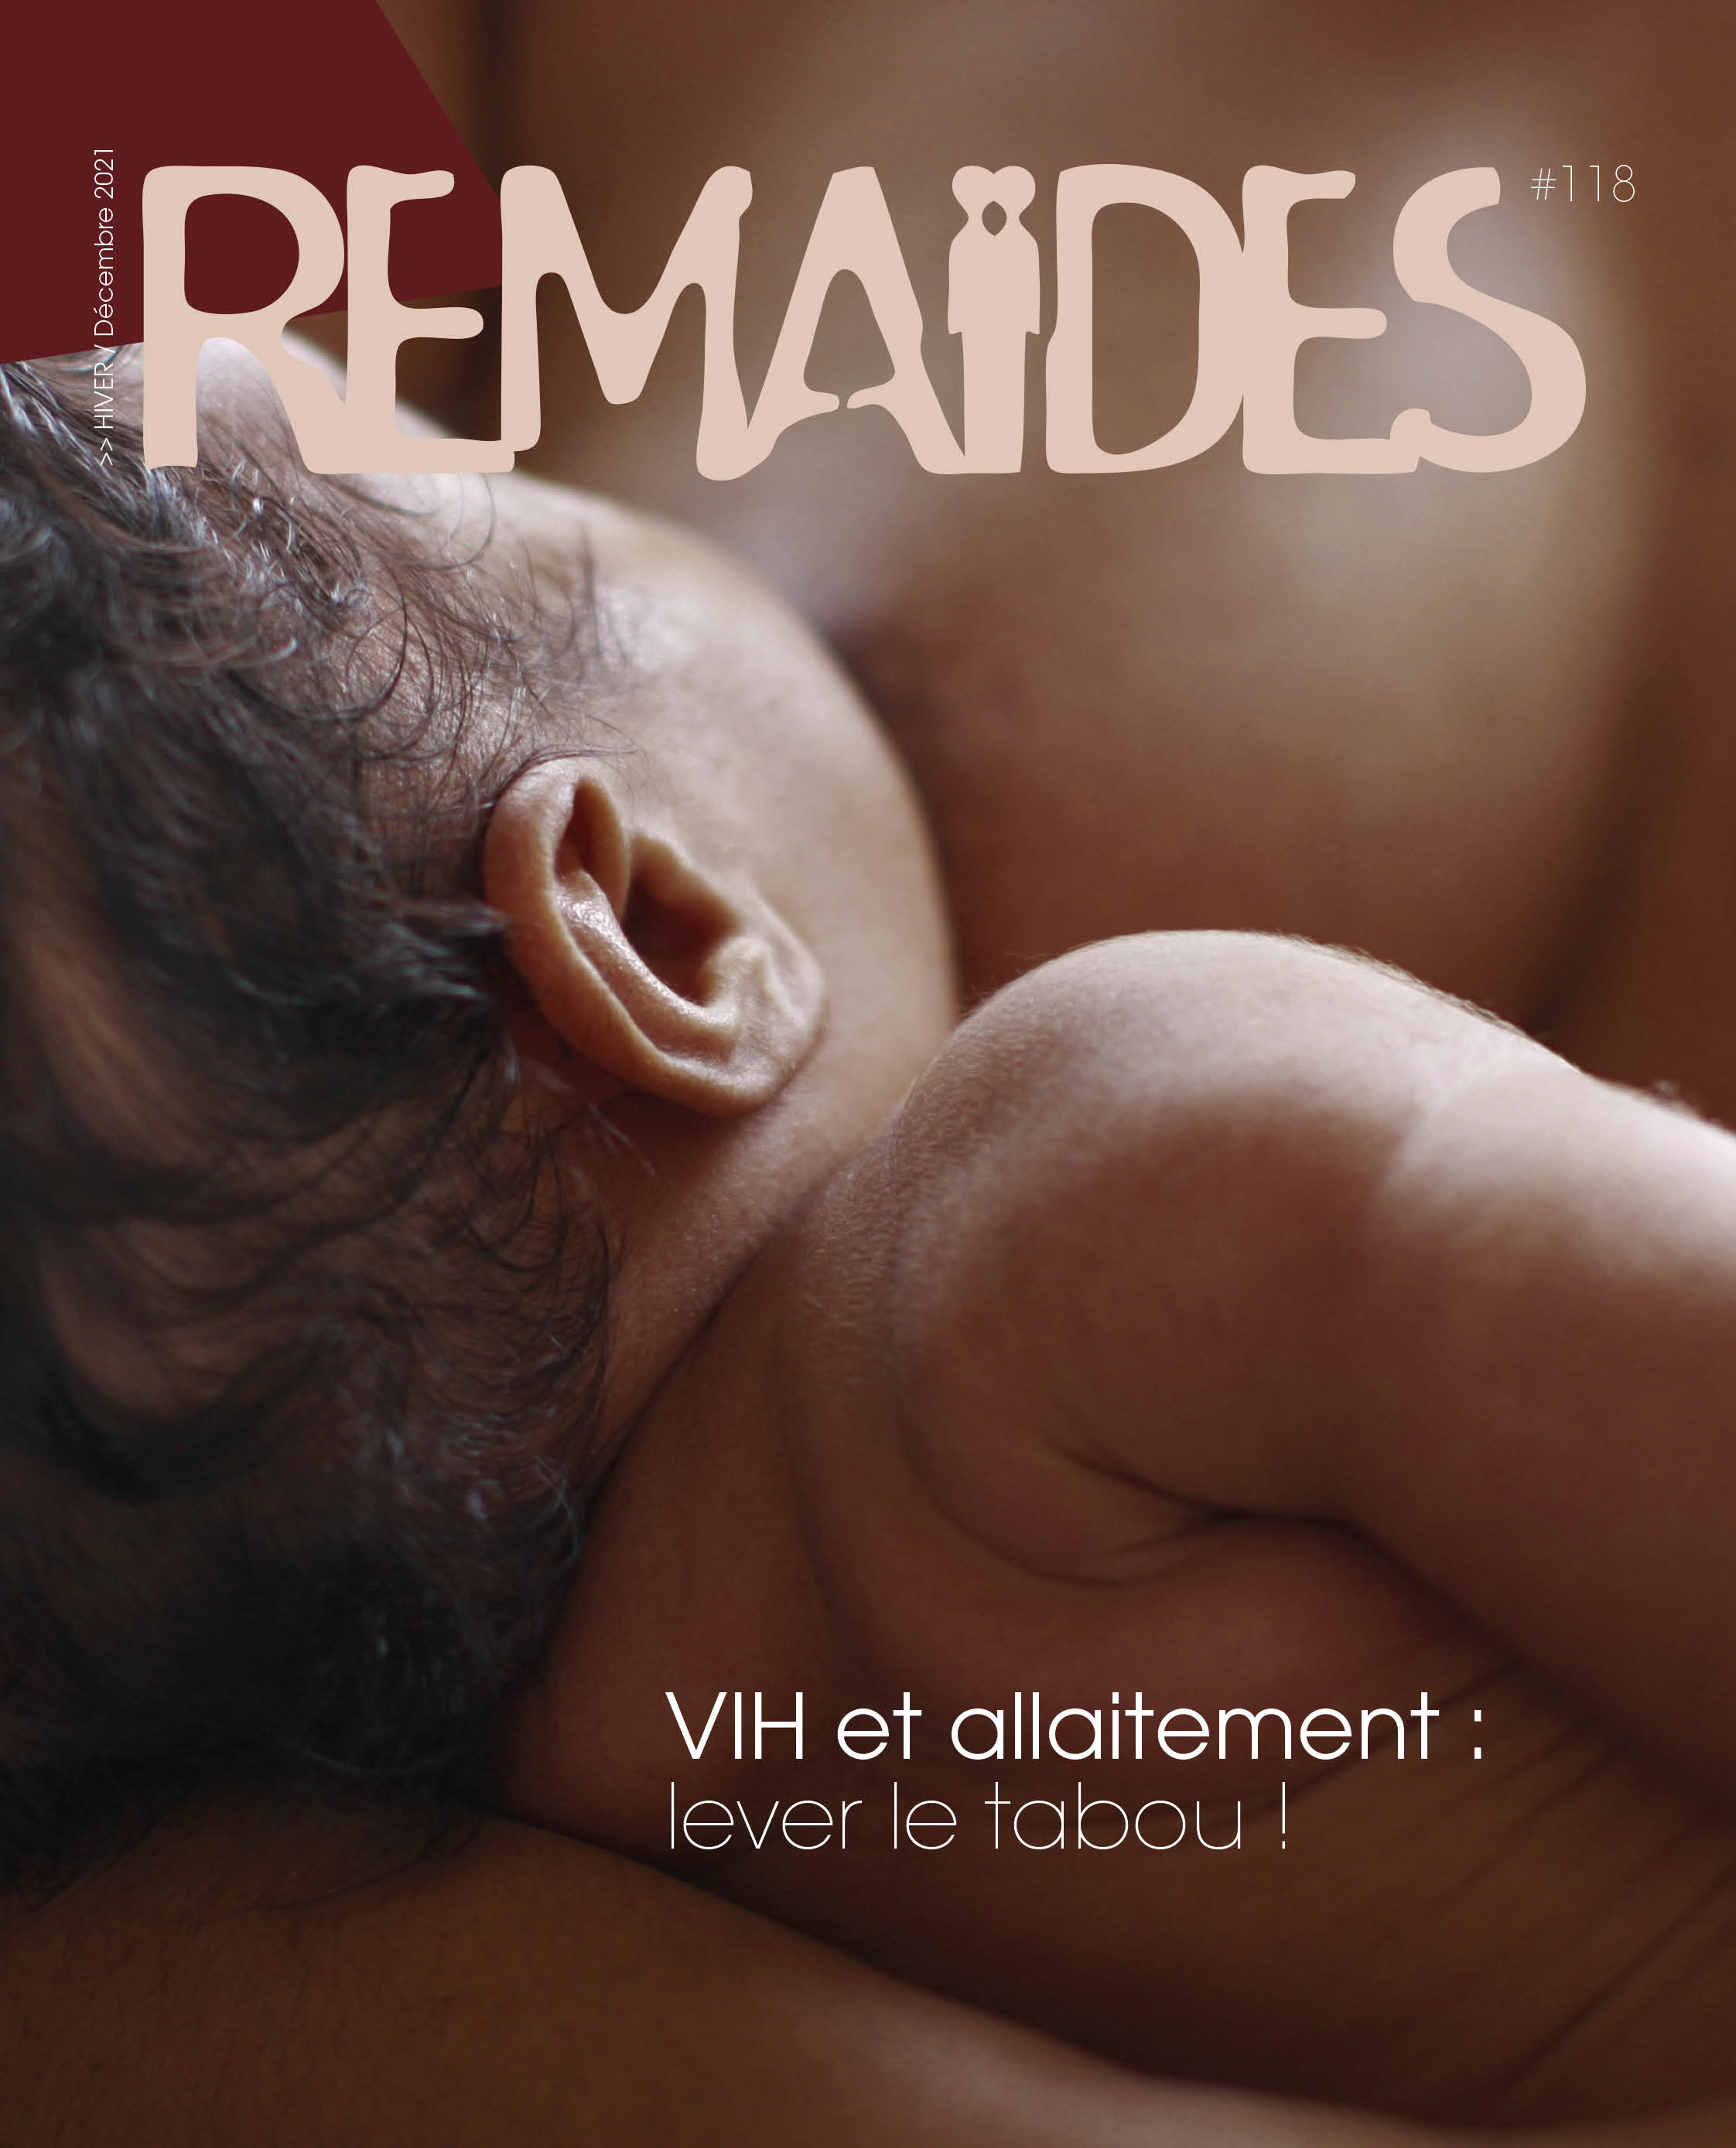 remaides 118 vih sida allaitement parentalité femmes personnes séropositives témoignages